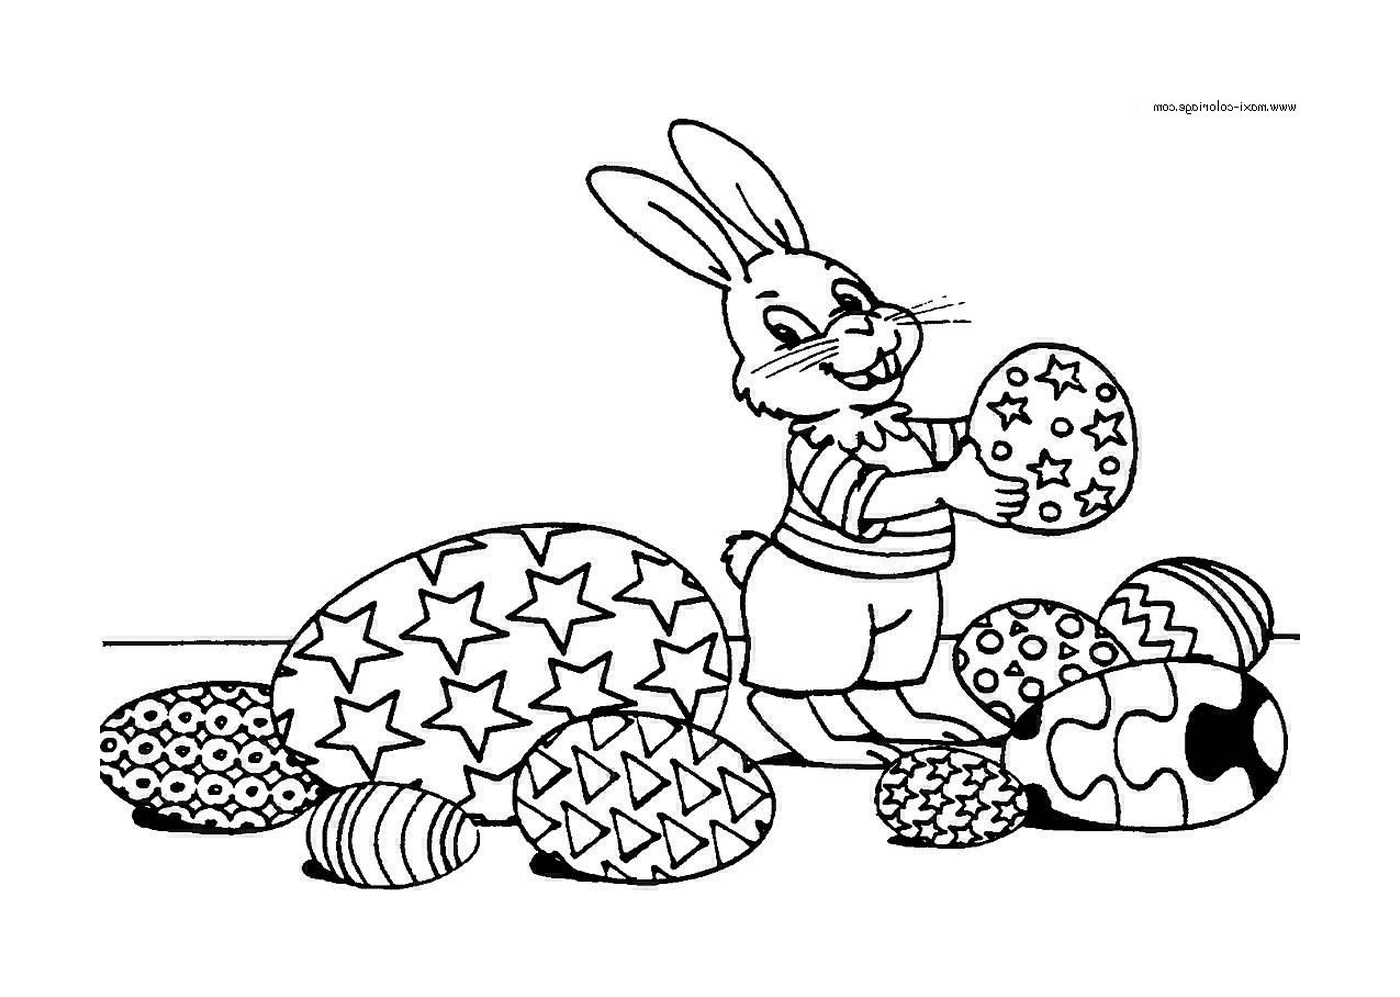  Um coelho segurando um biscoito na mão 